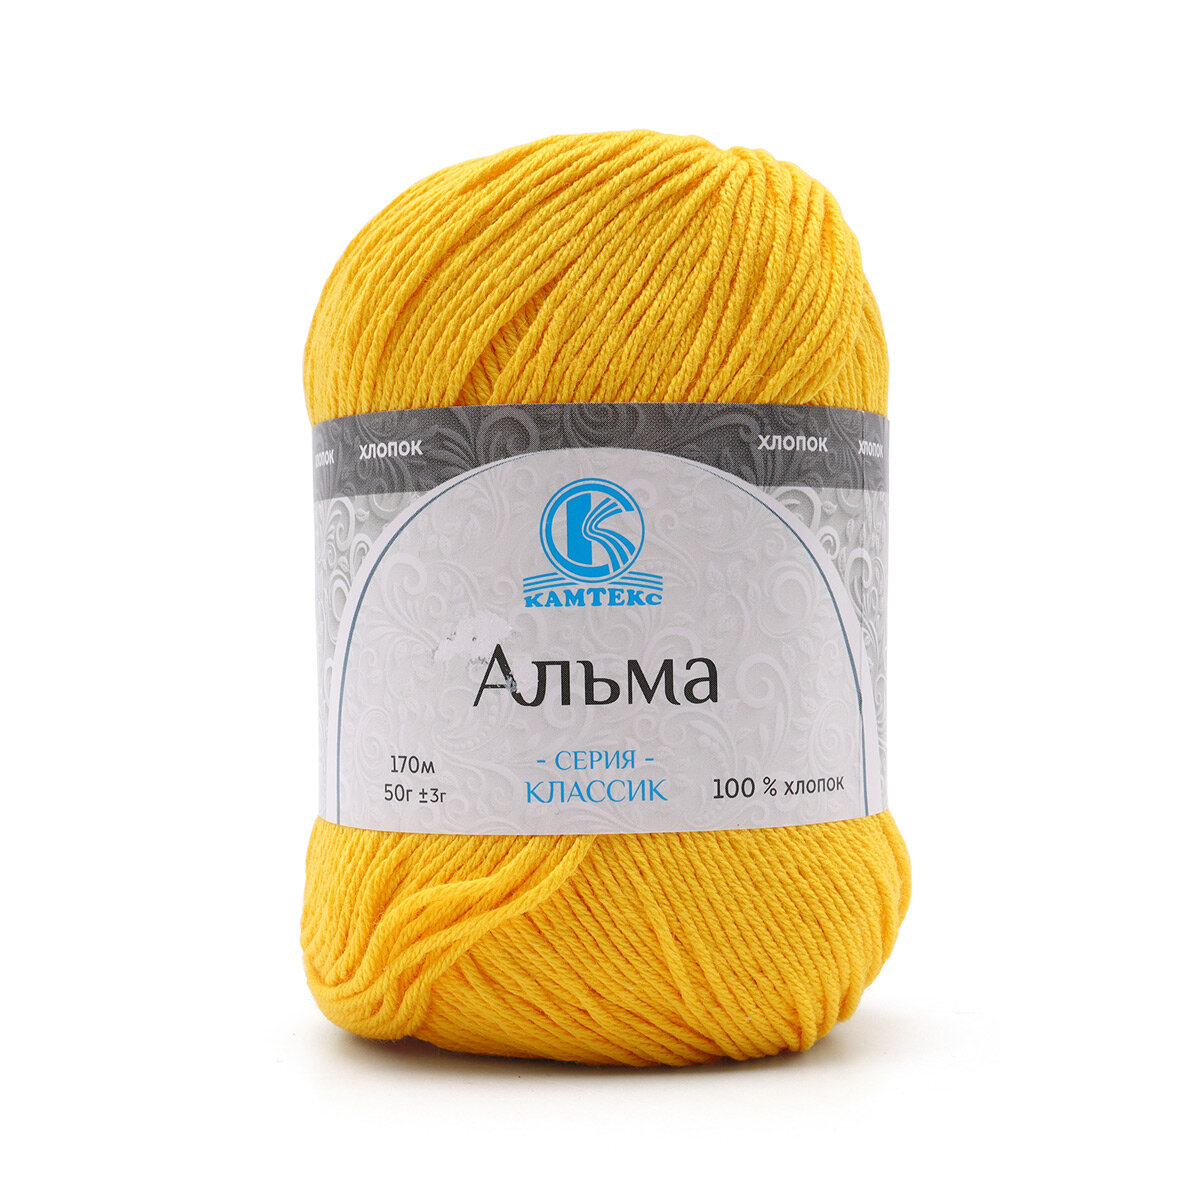 Пряжа для вязания Камтекс 'Альма', 50г, 170м (100% хлопок) (104 желтый), 5 мотков